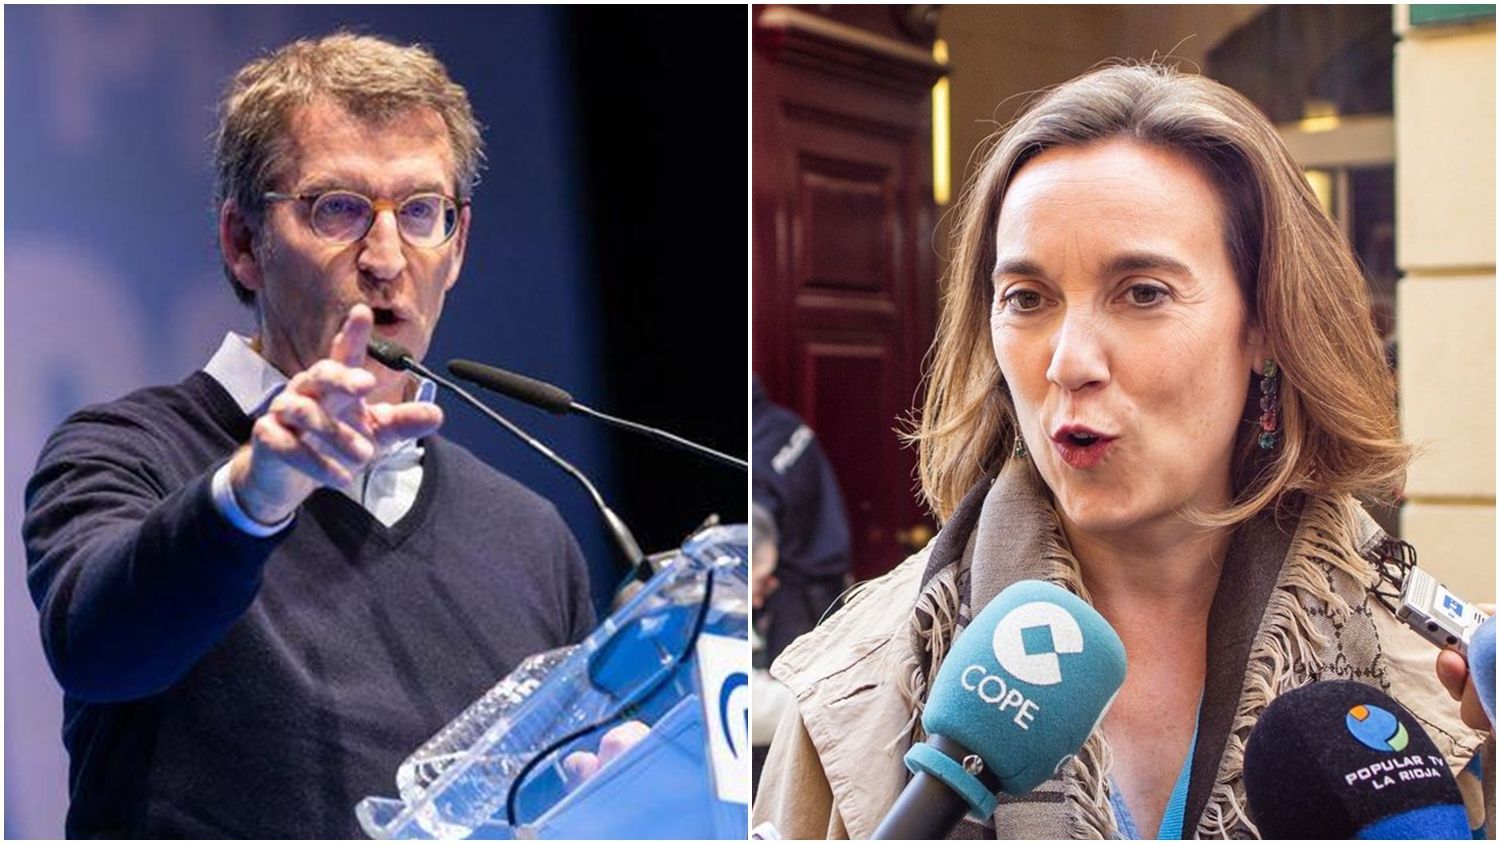 LO MÁS SORPRENDENTE DE MARZO Feijóo propone a Gamarra como nueva secretaria general del PP (Castilla-La Mancha, La Ventana de CLM)